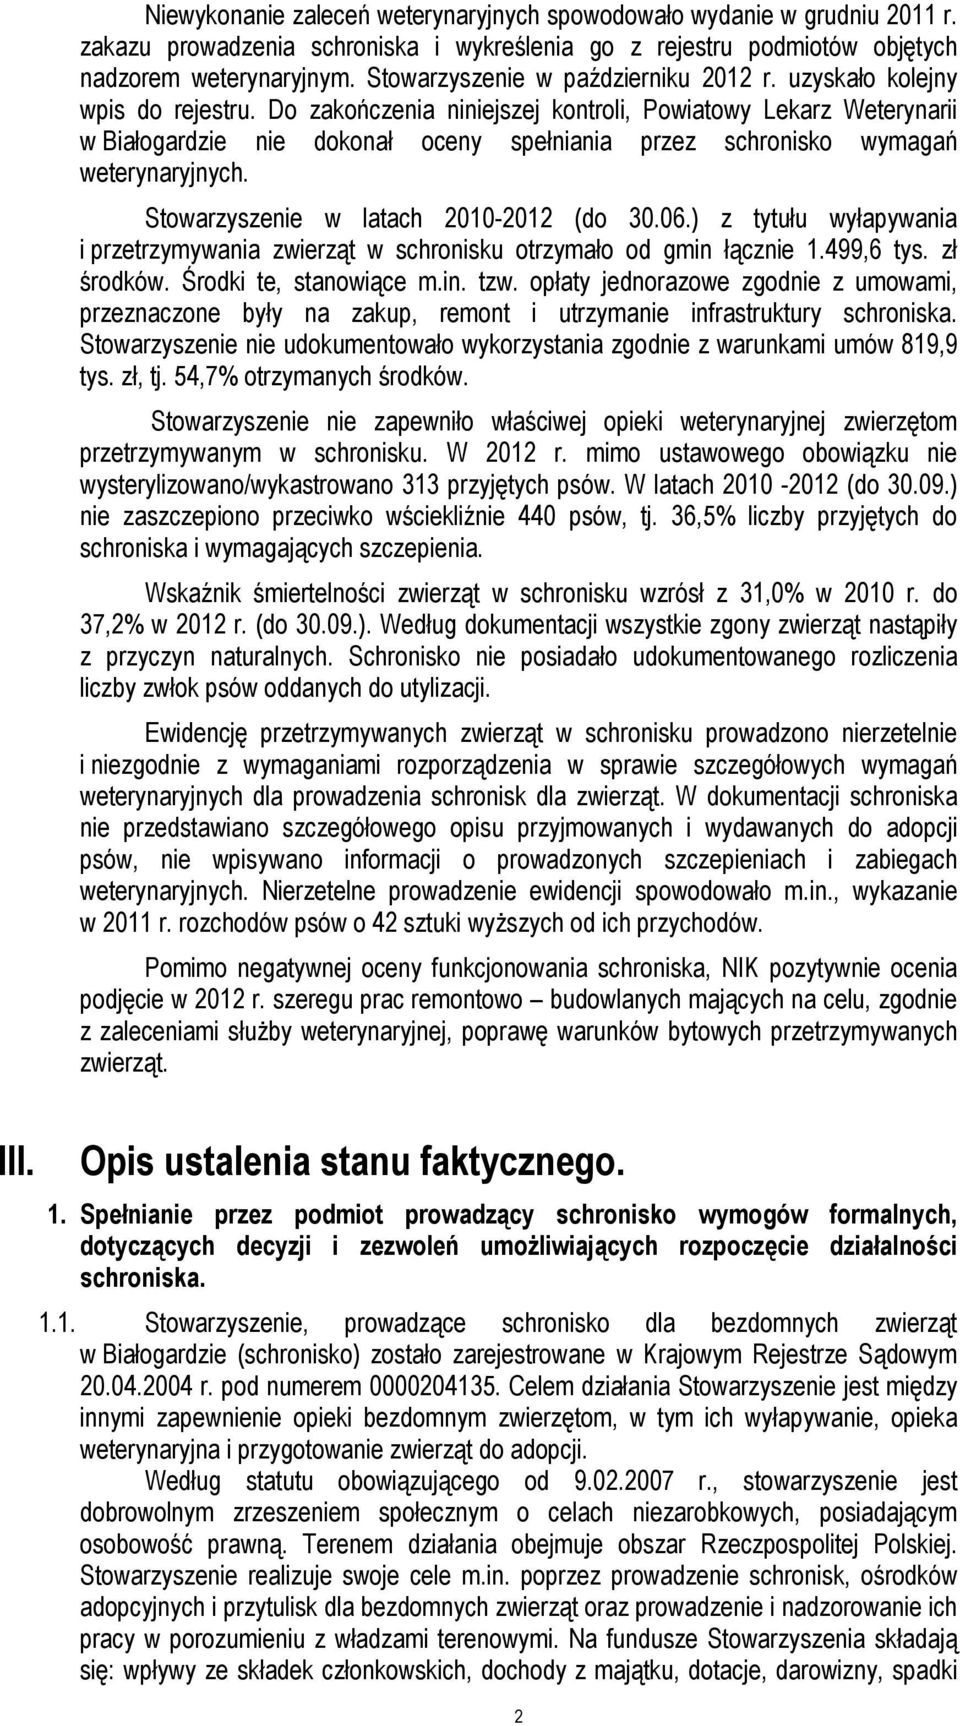 Do zakończenia niniejszej kontroli, Powiatowy Lekarz Weterynarii w Białogardzie nie dokonał oceny spełniania przez schronisko wymagań weterynaryjnych. Stowarzyszenie w latach 2010-2012 (do 30.06.